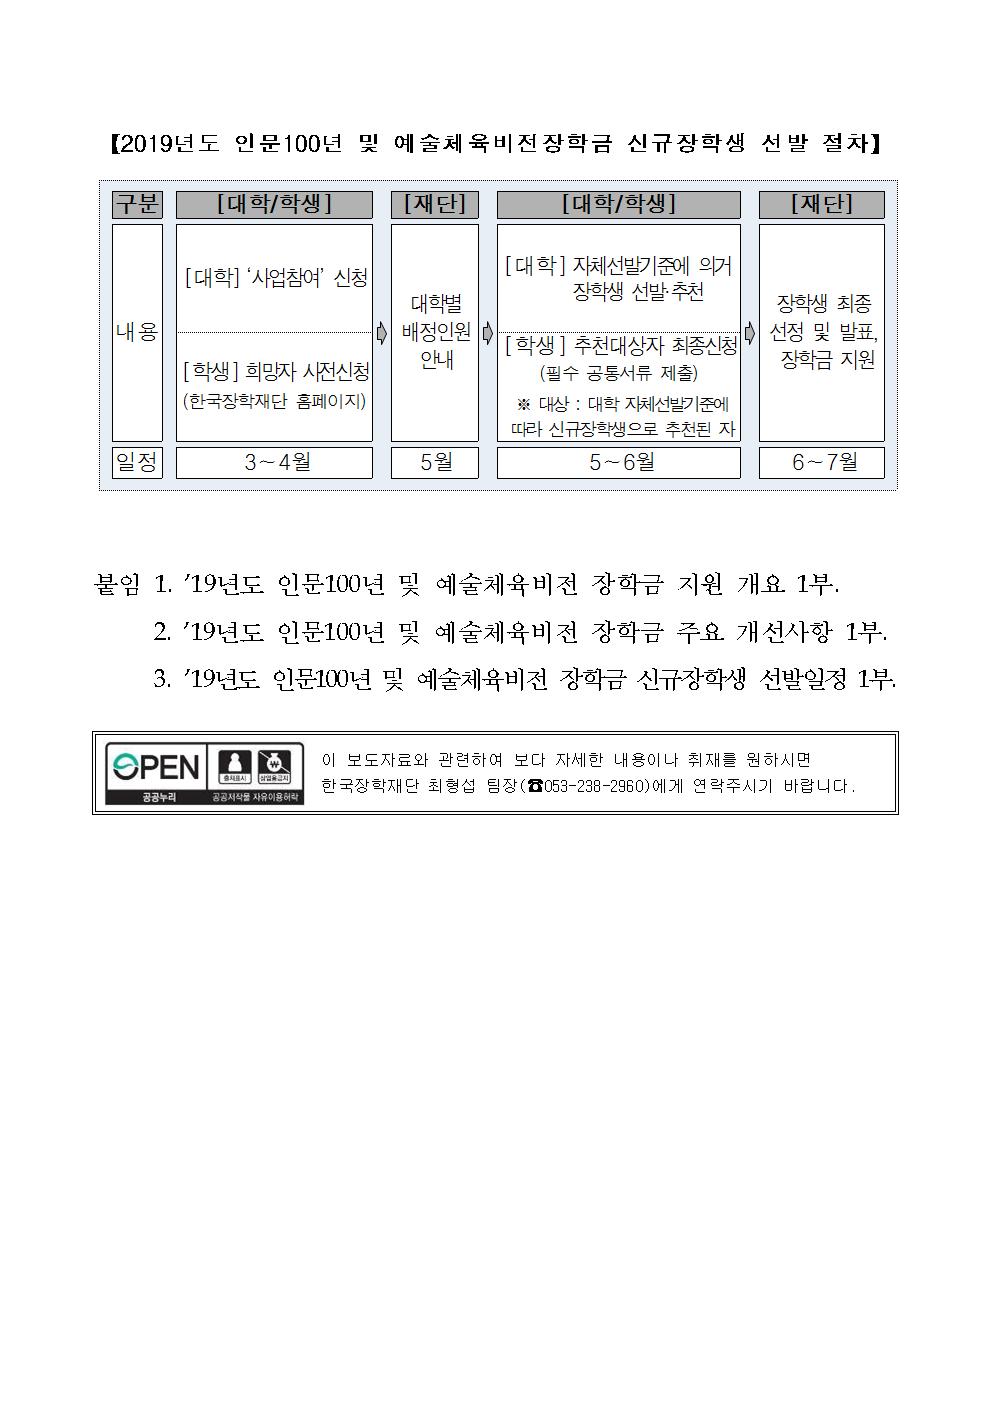 04-02(화)[보도자료] 2019년 인문사회 및 예술체육 계열 우수인재003.jpg